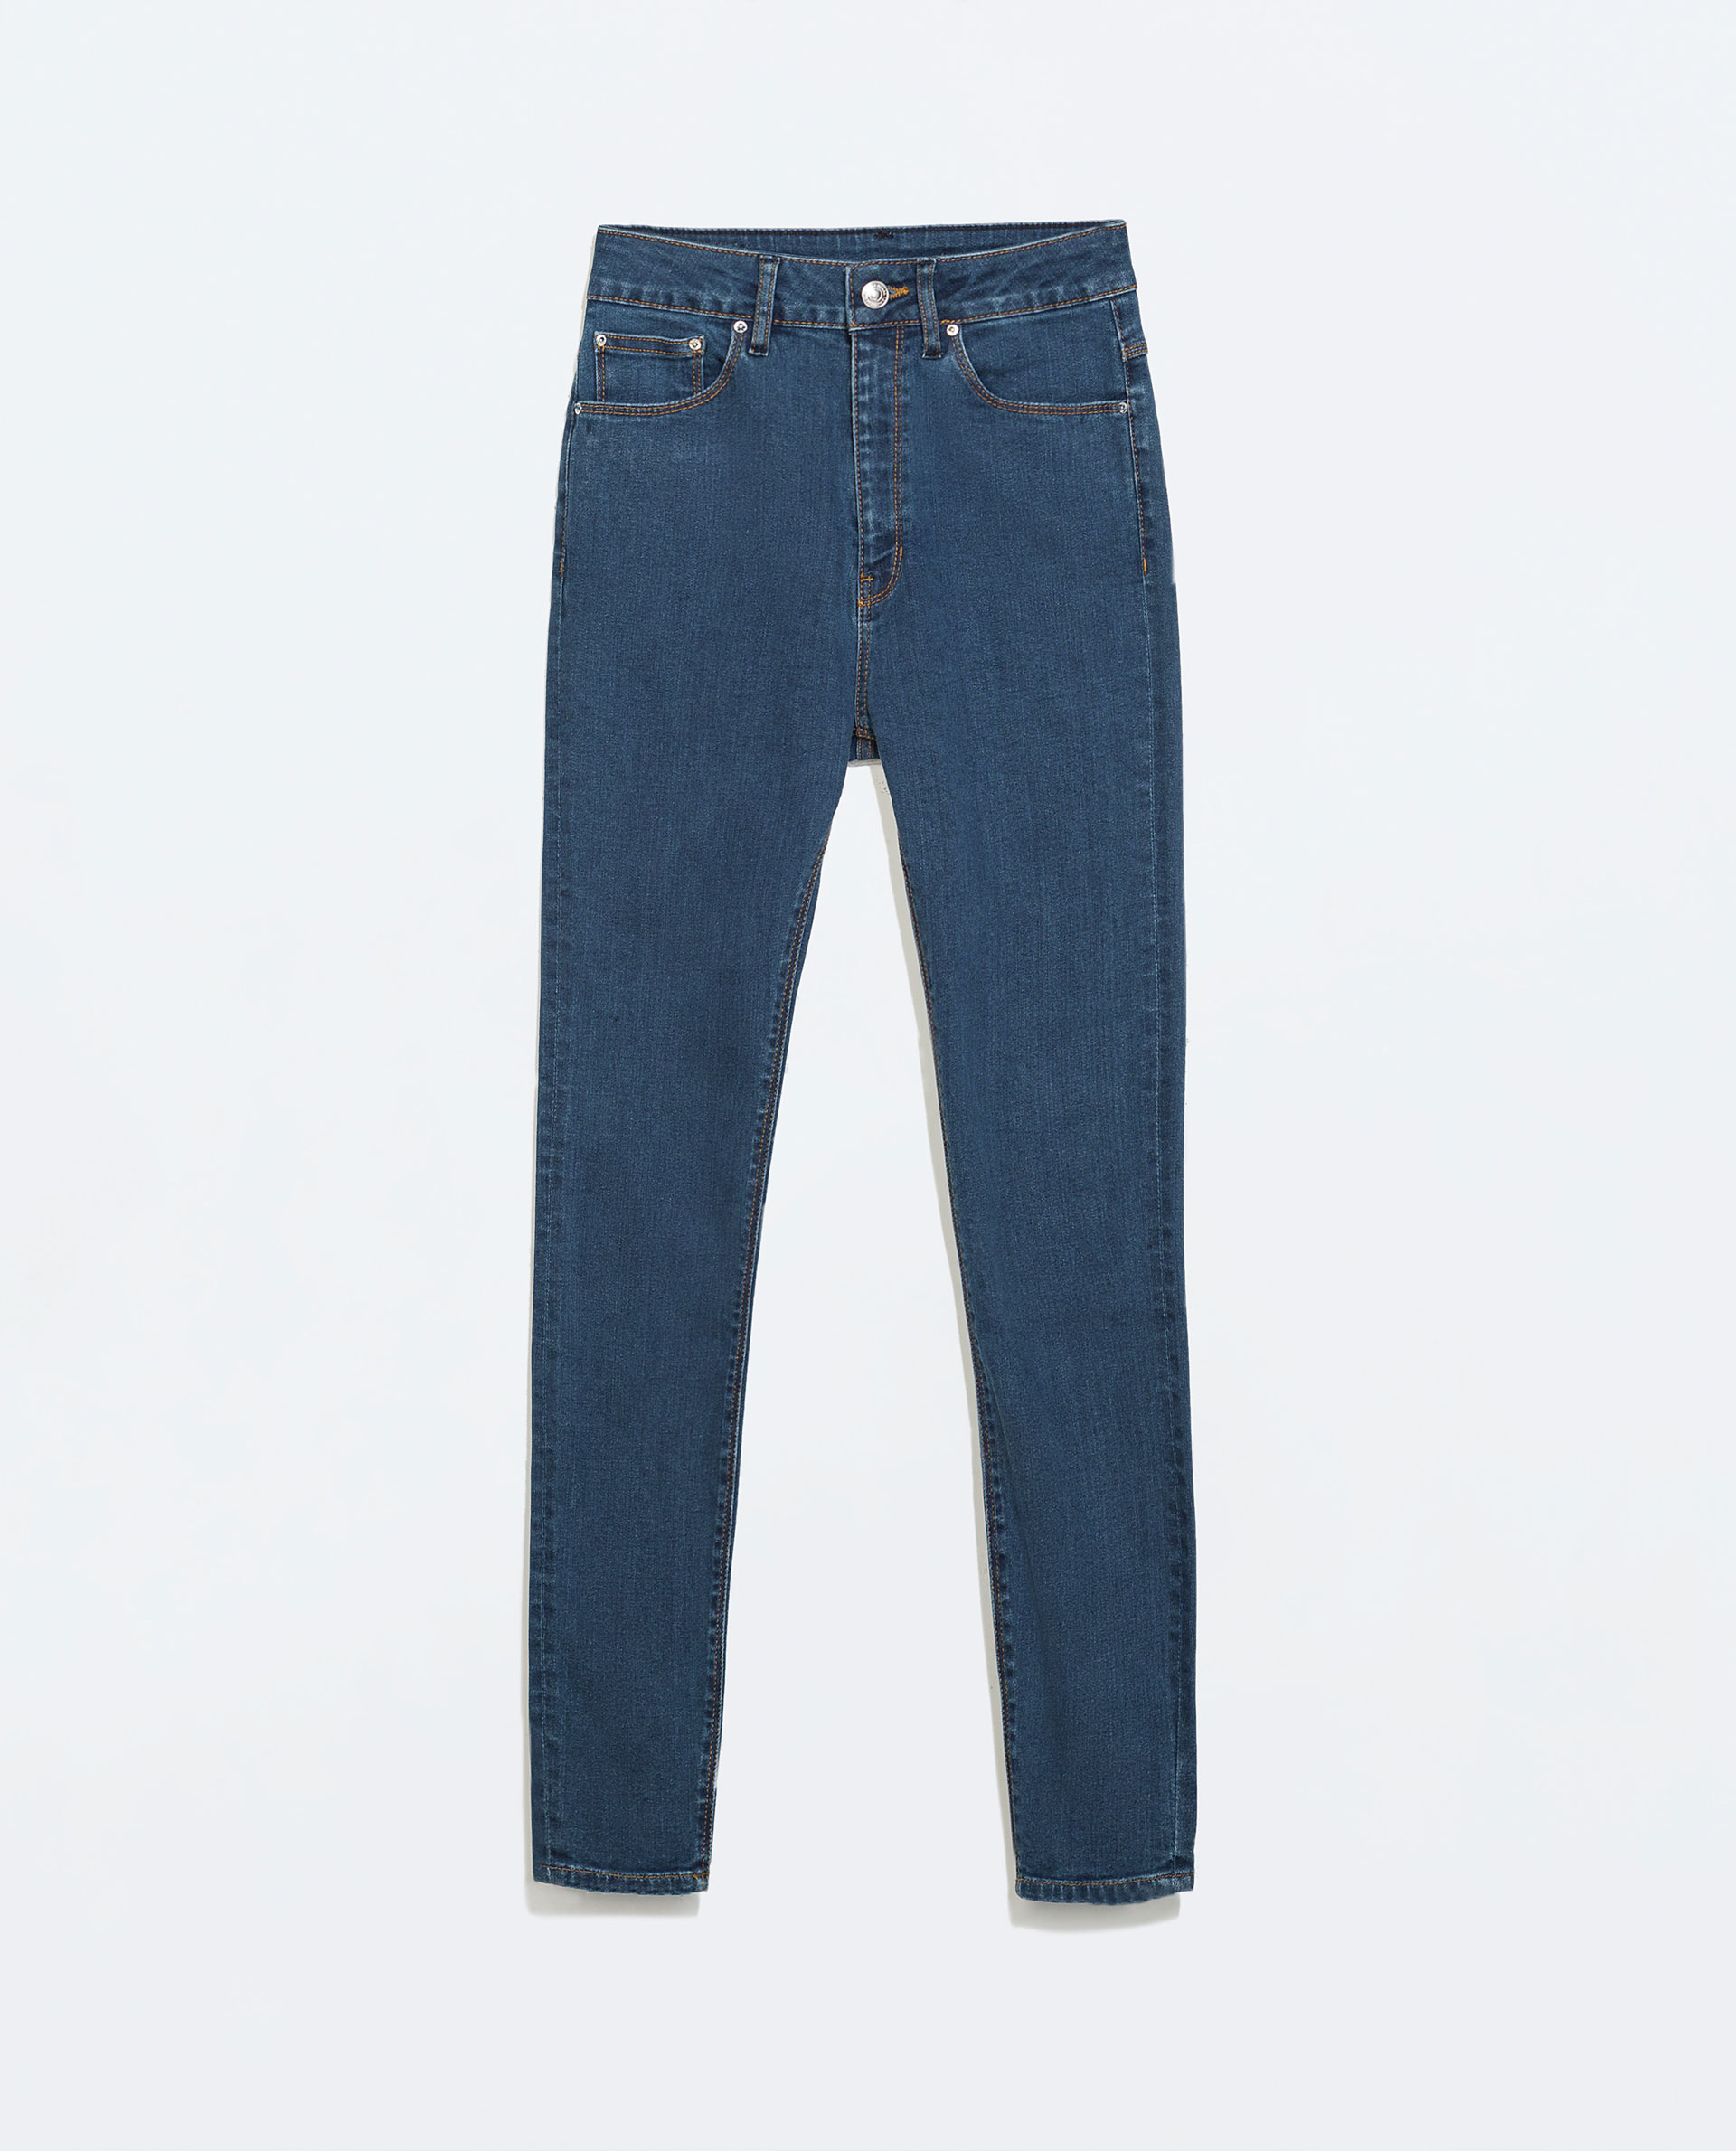 Women's clothing and accessories: Weiße high waist jeans zara Australia ...